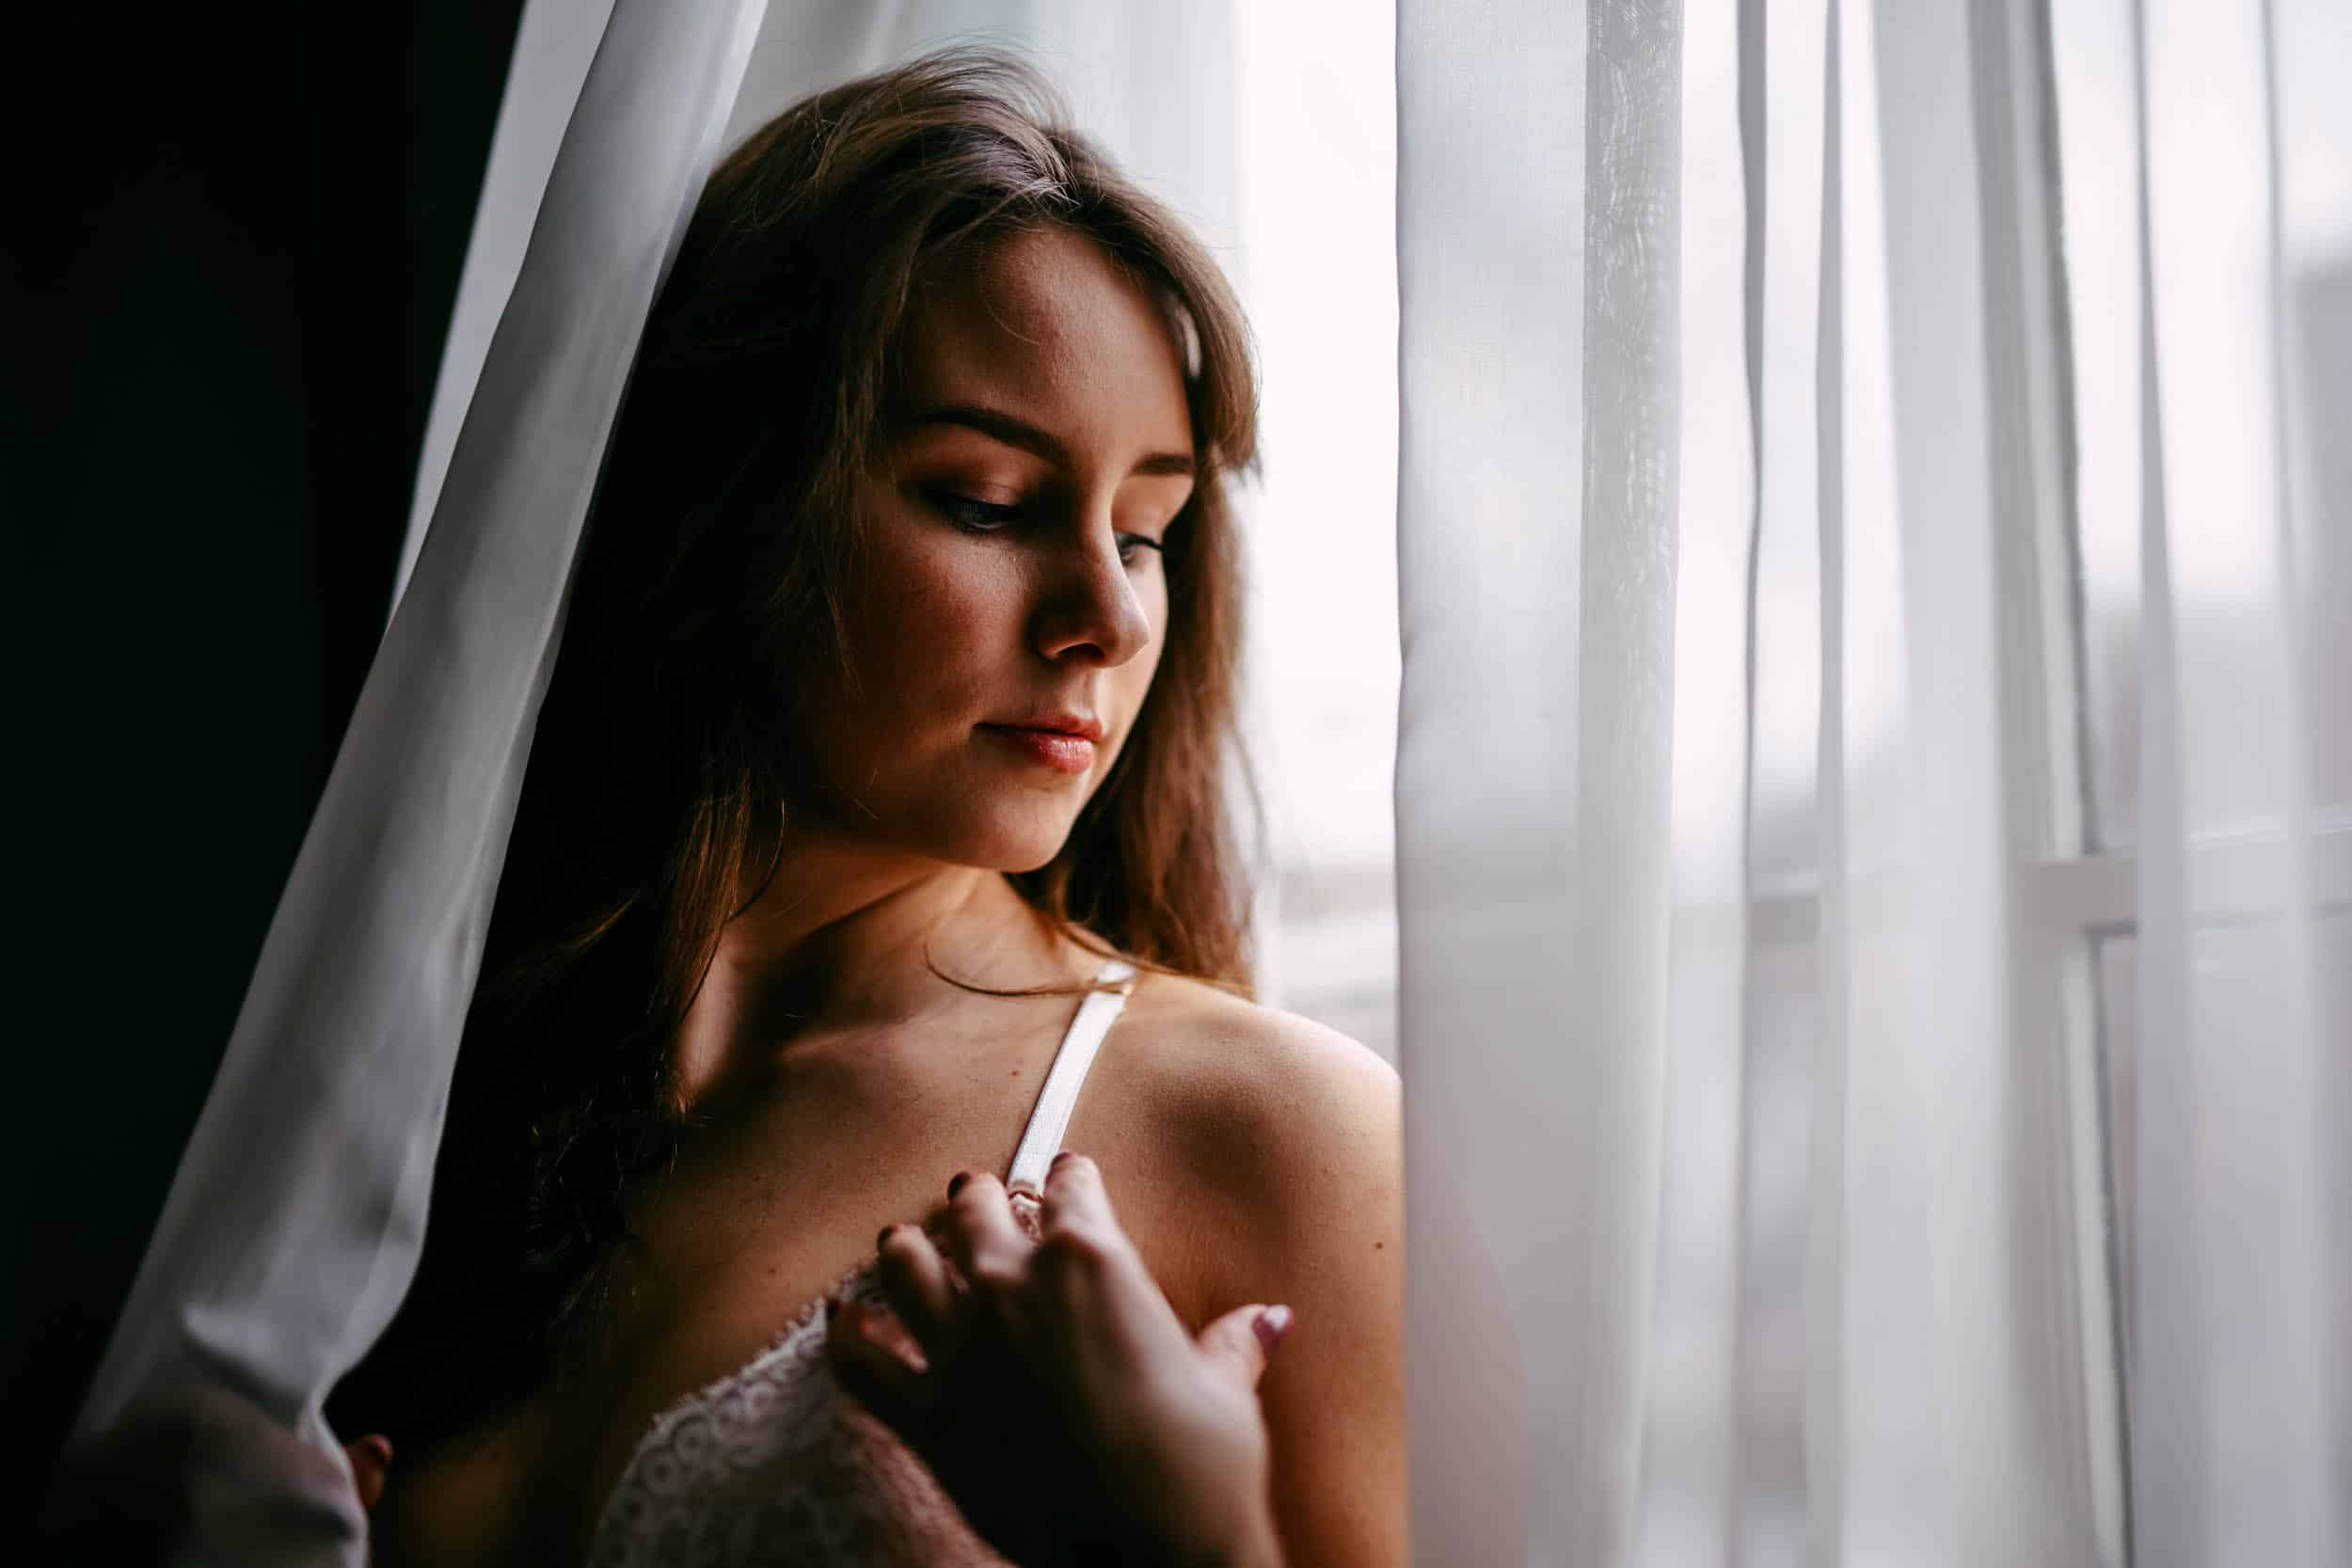 Een vrouw in een boudoir die uit een raam kijkt.